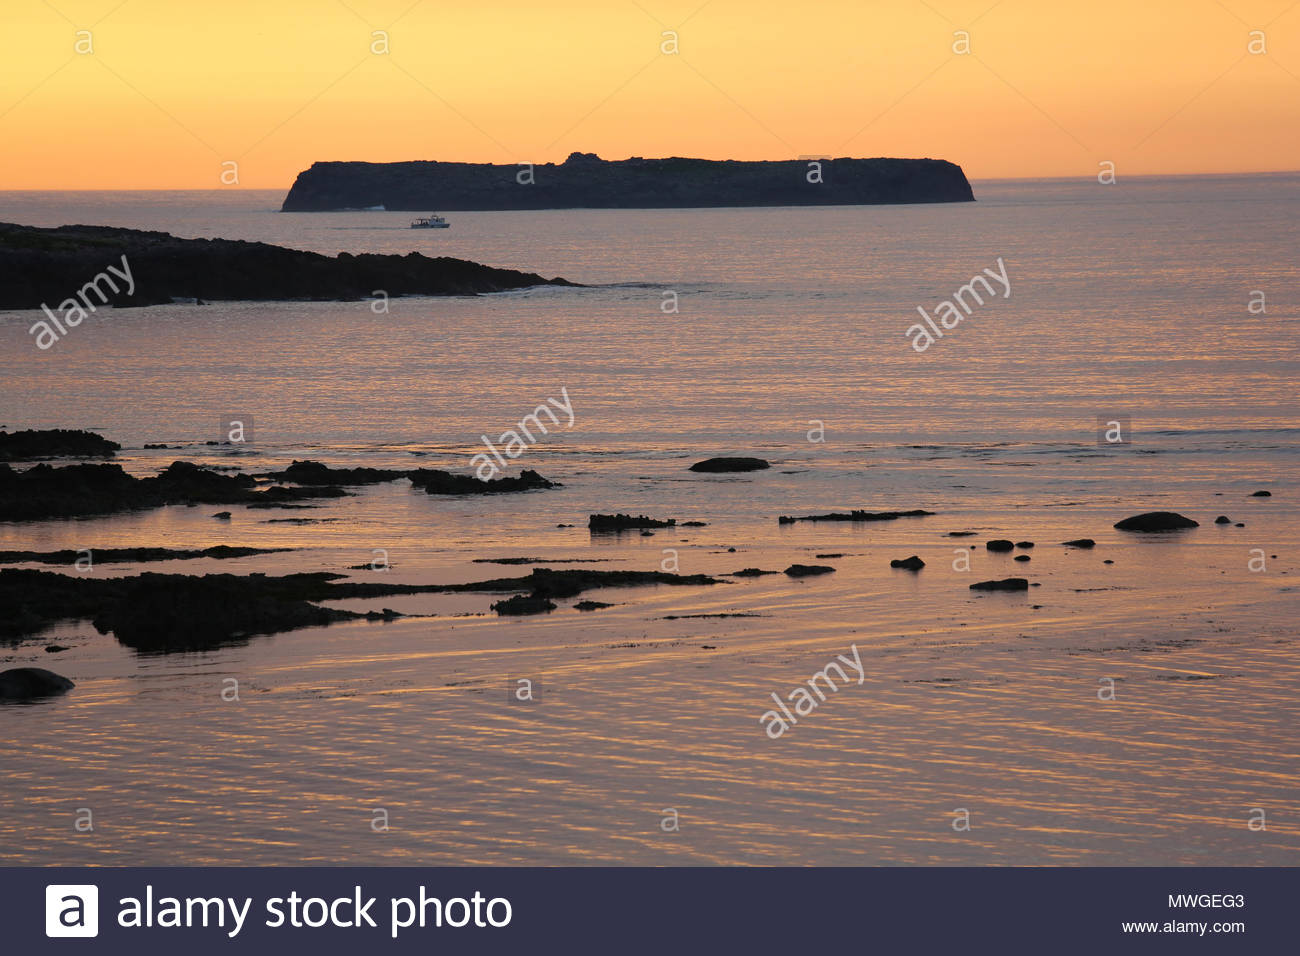 Sonnenuntergang fällt über die sieben Schweine von Inseln vor der Küste von Castlegregory in Irland als ein Schiff Köpfe zum Meer. Stockfoto